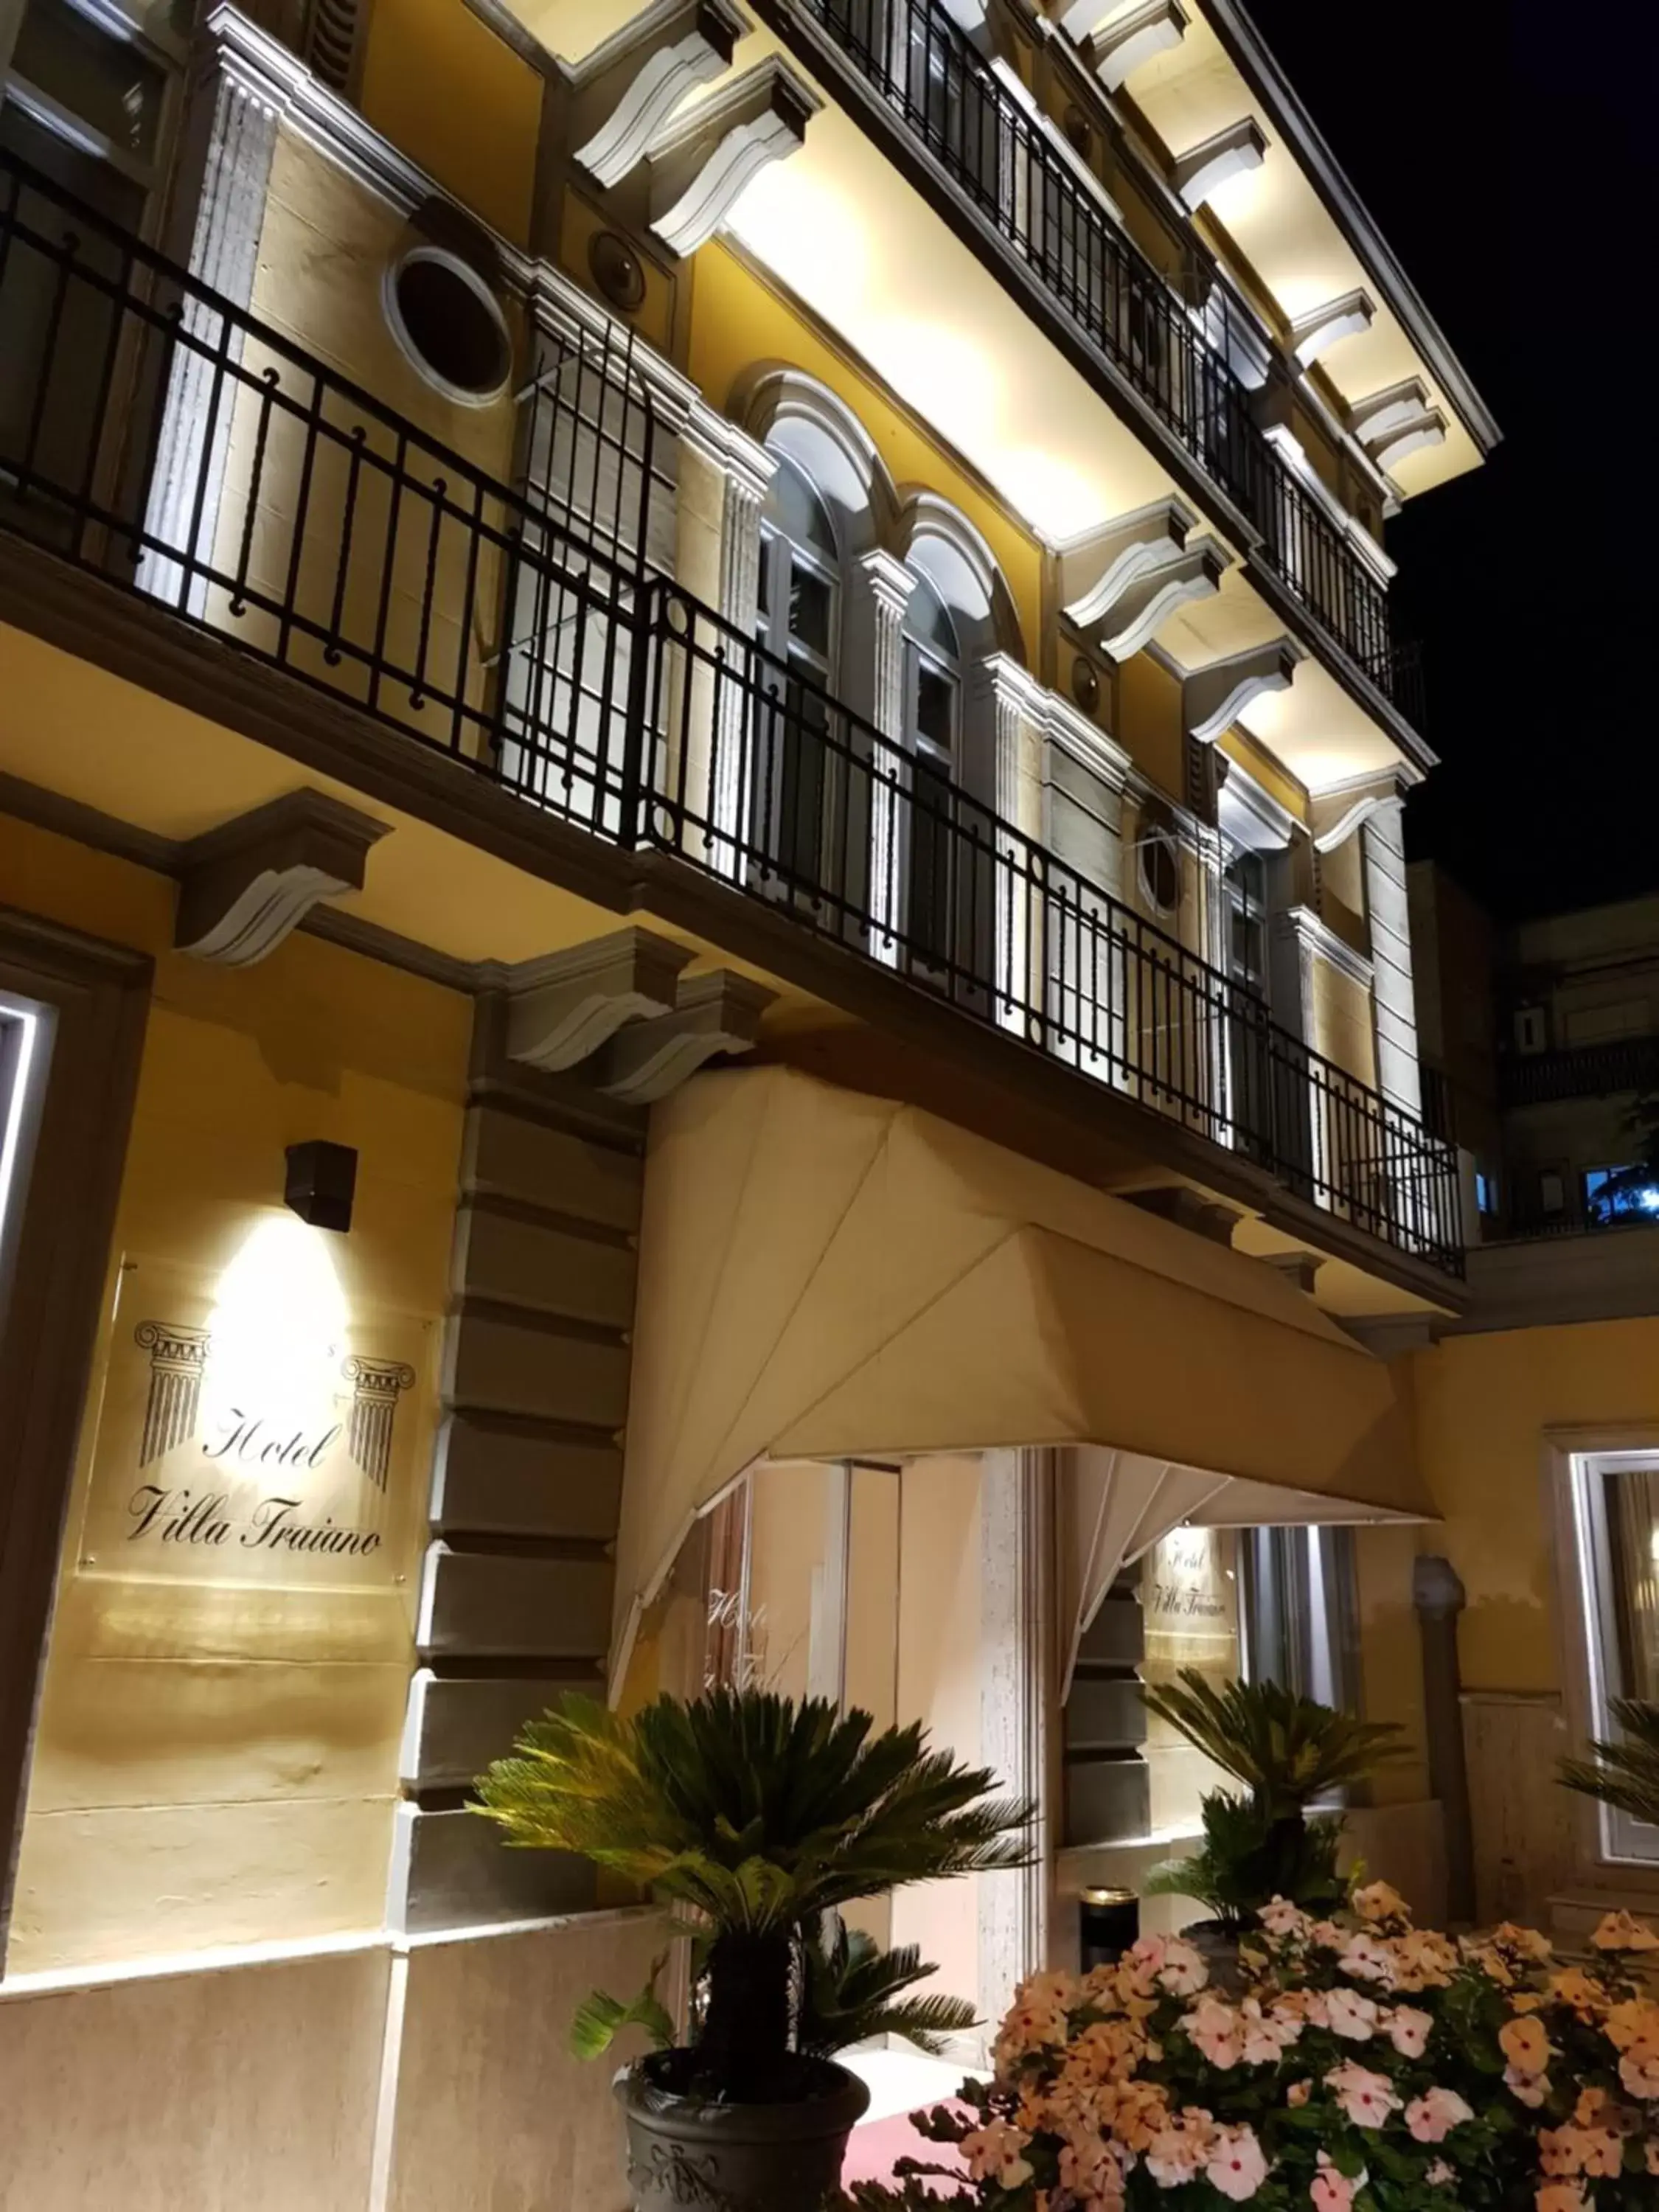 Facade/entrance in Hotel Villa Traiano